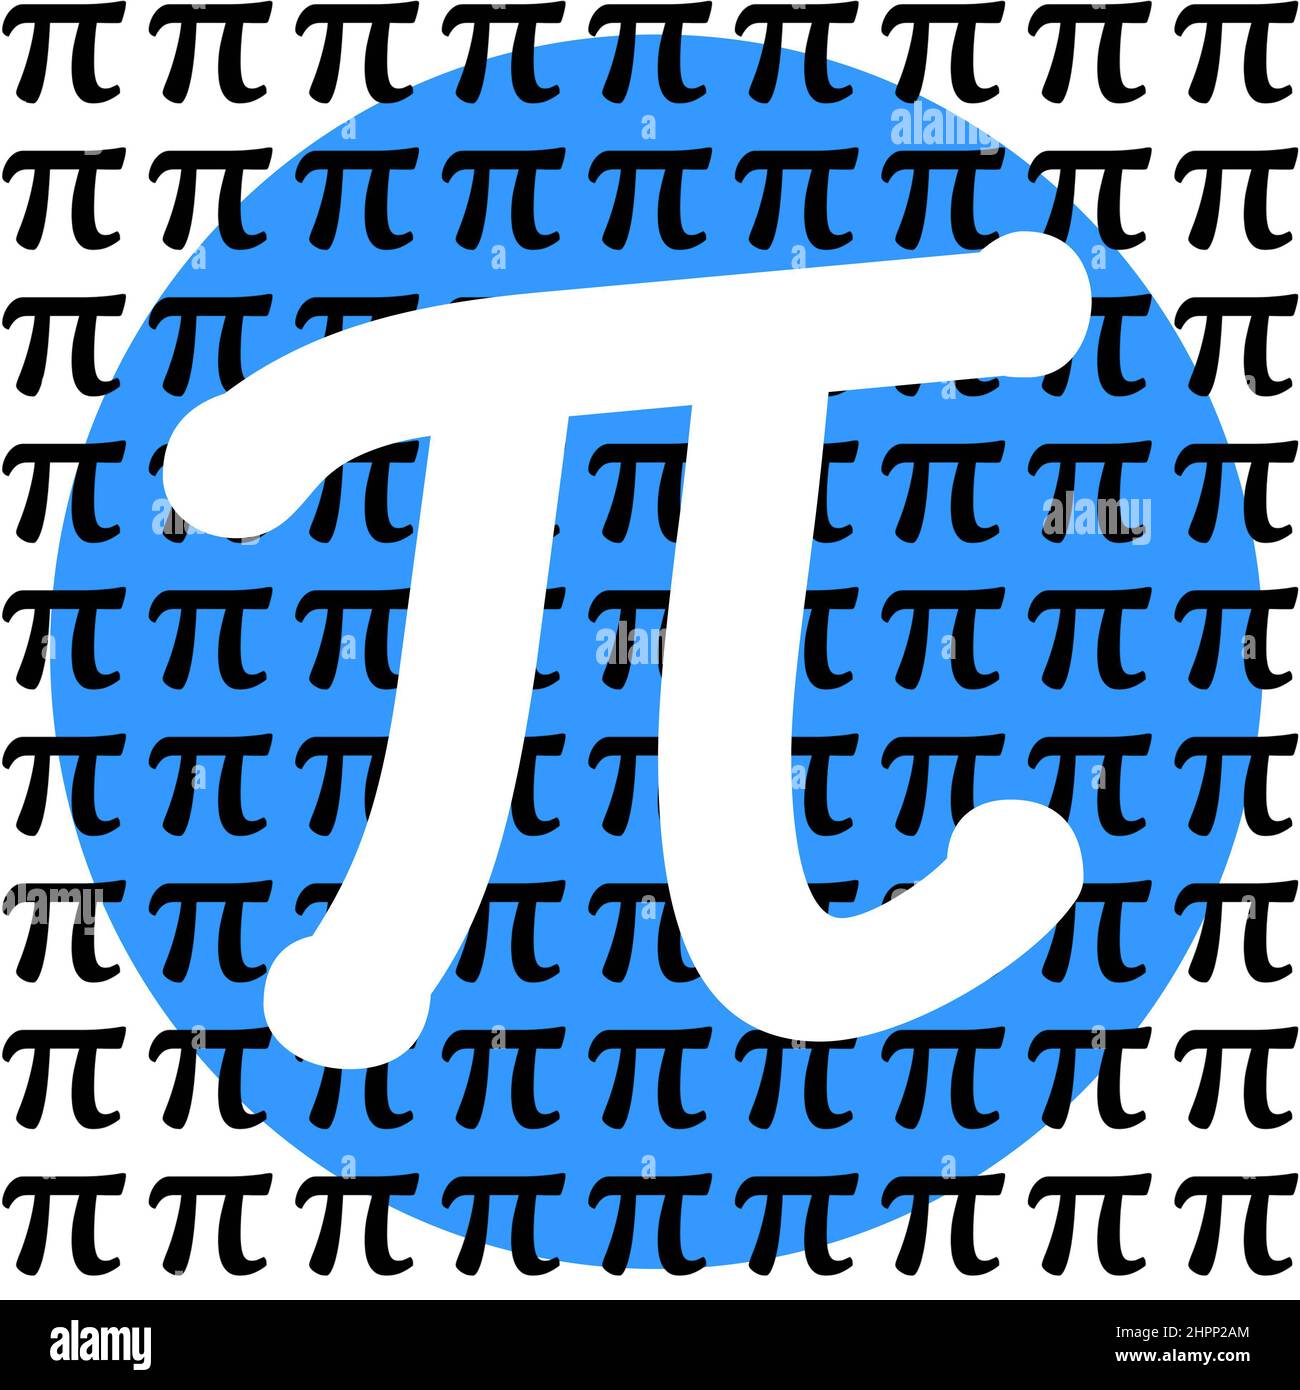 Signe Pi blanc dans un cercle bleu avec des symboles pi noirs plus petits sur toute la typographie graphique pour Pi Day, une fête originale le 14 mars, puisque pi équivaut à 3,14 Banque D'Images